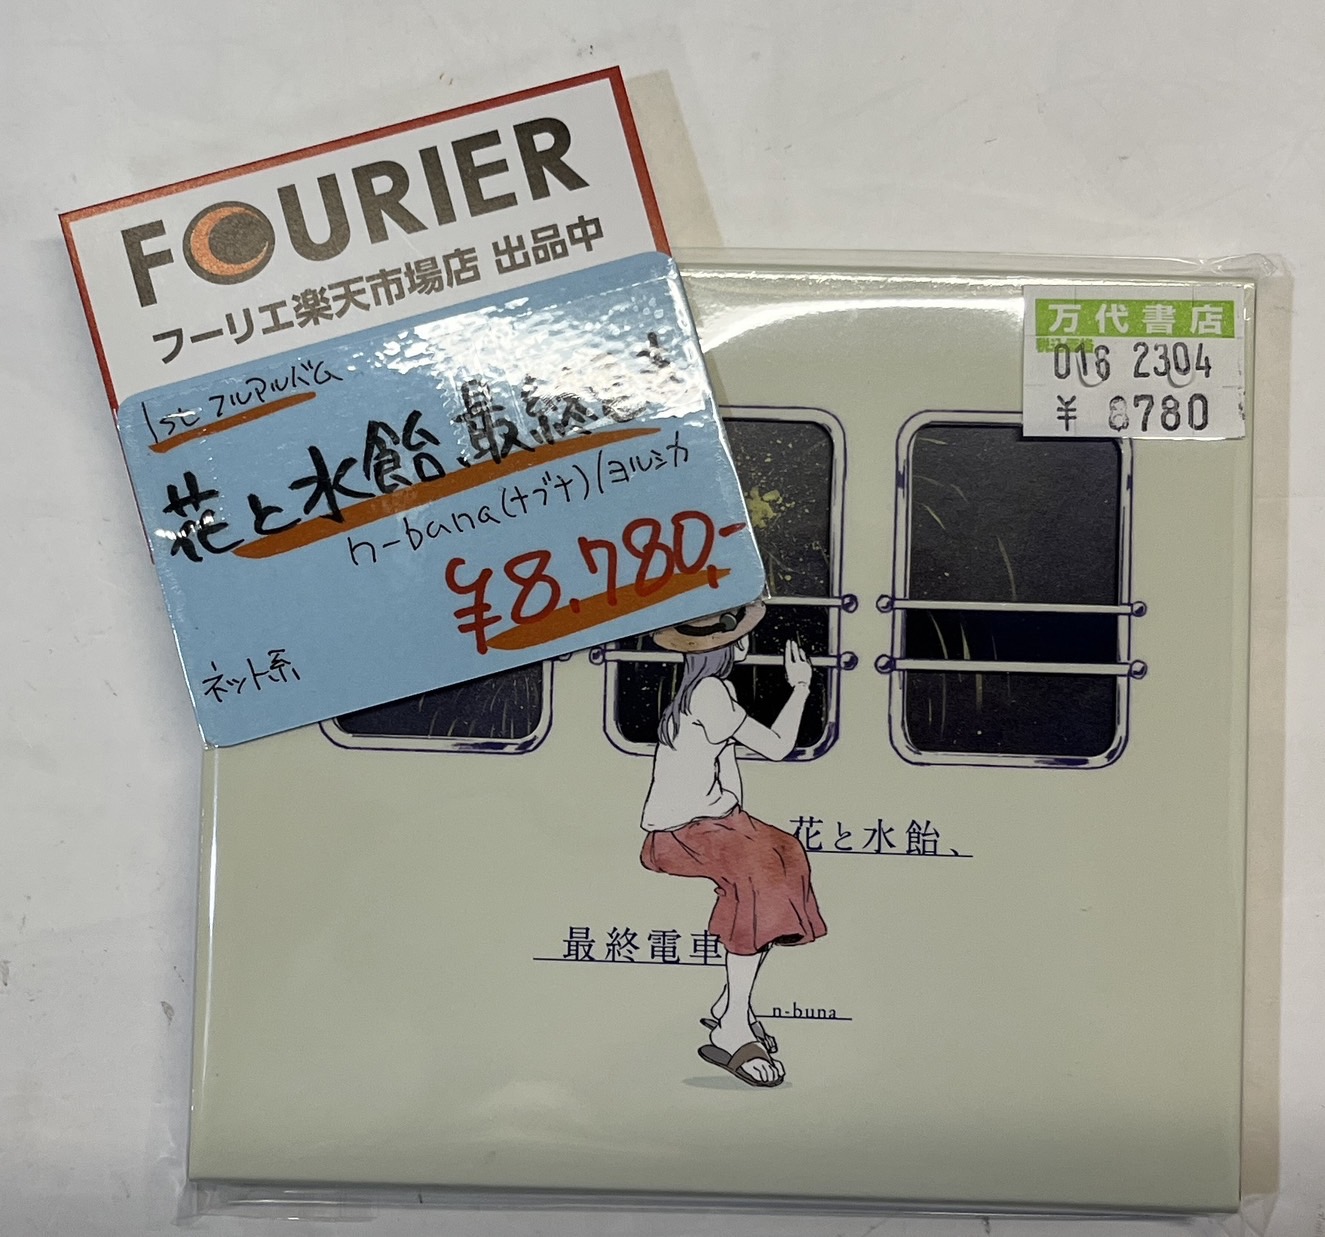 □【鈴鹿店】CD入荷情報♪◇［CD］n-buna/ﾖﾙｼｶ「花と水飴、最終電車 